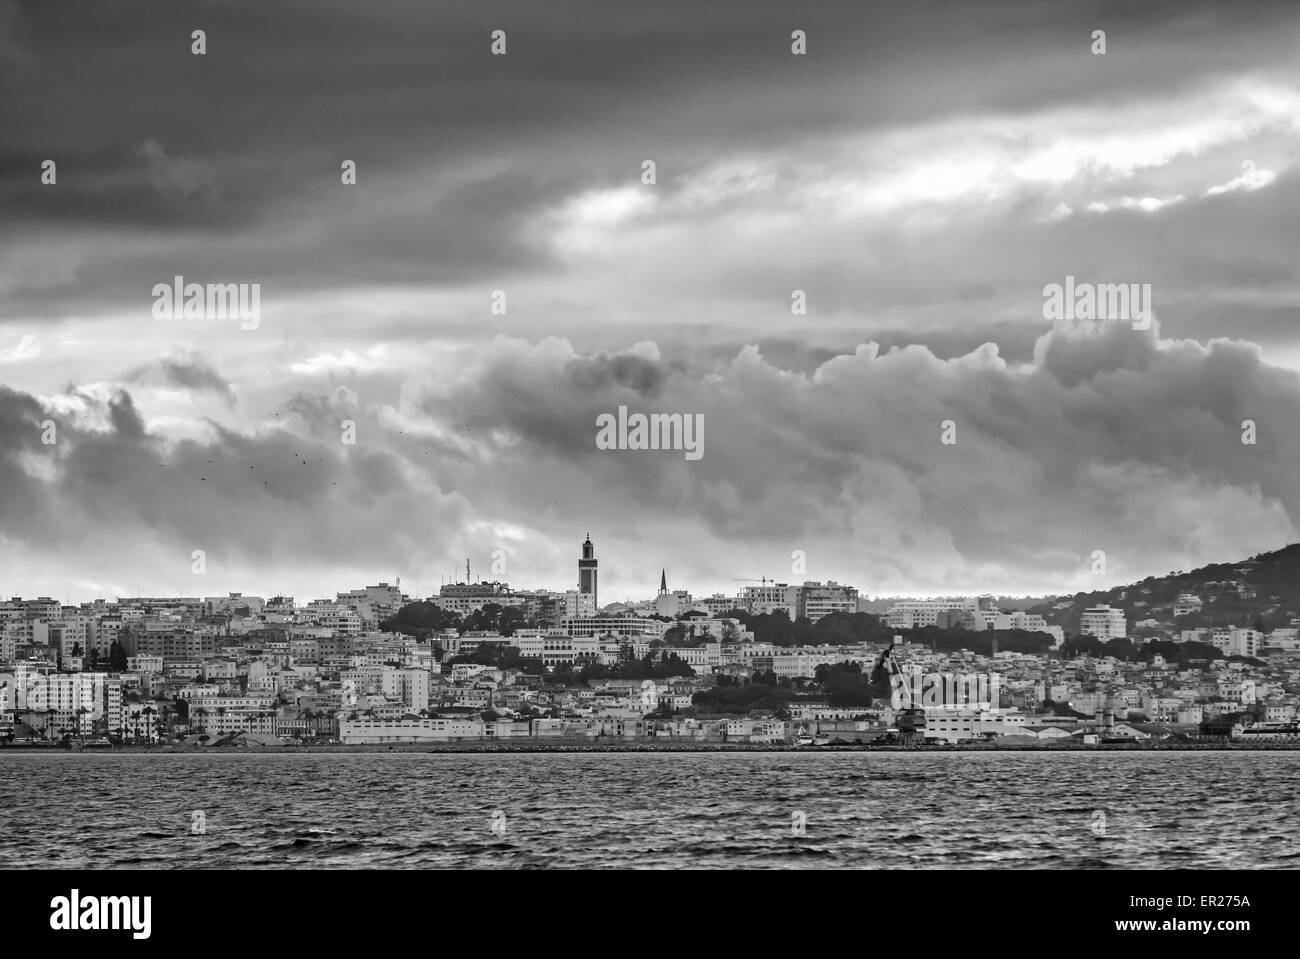 Ciel nuageux orageux sur la ville de Tanger, Maroc. Photo noir et blanc effet de filtre Banque D'Images